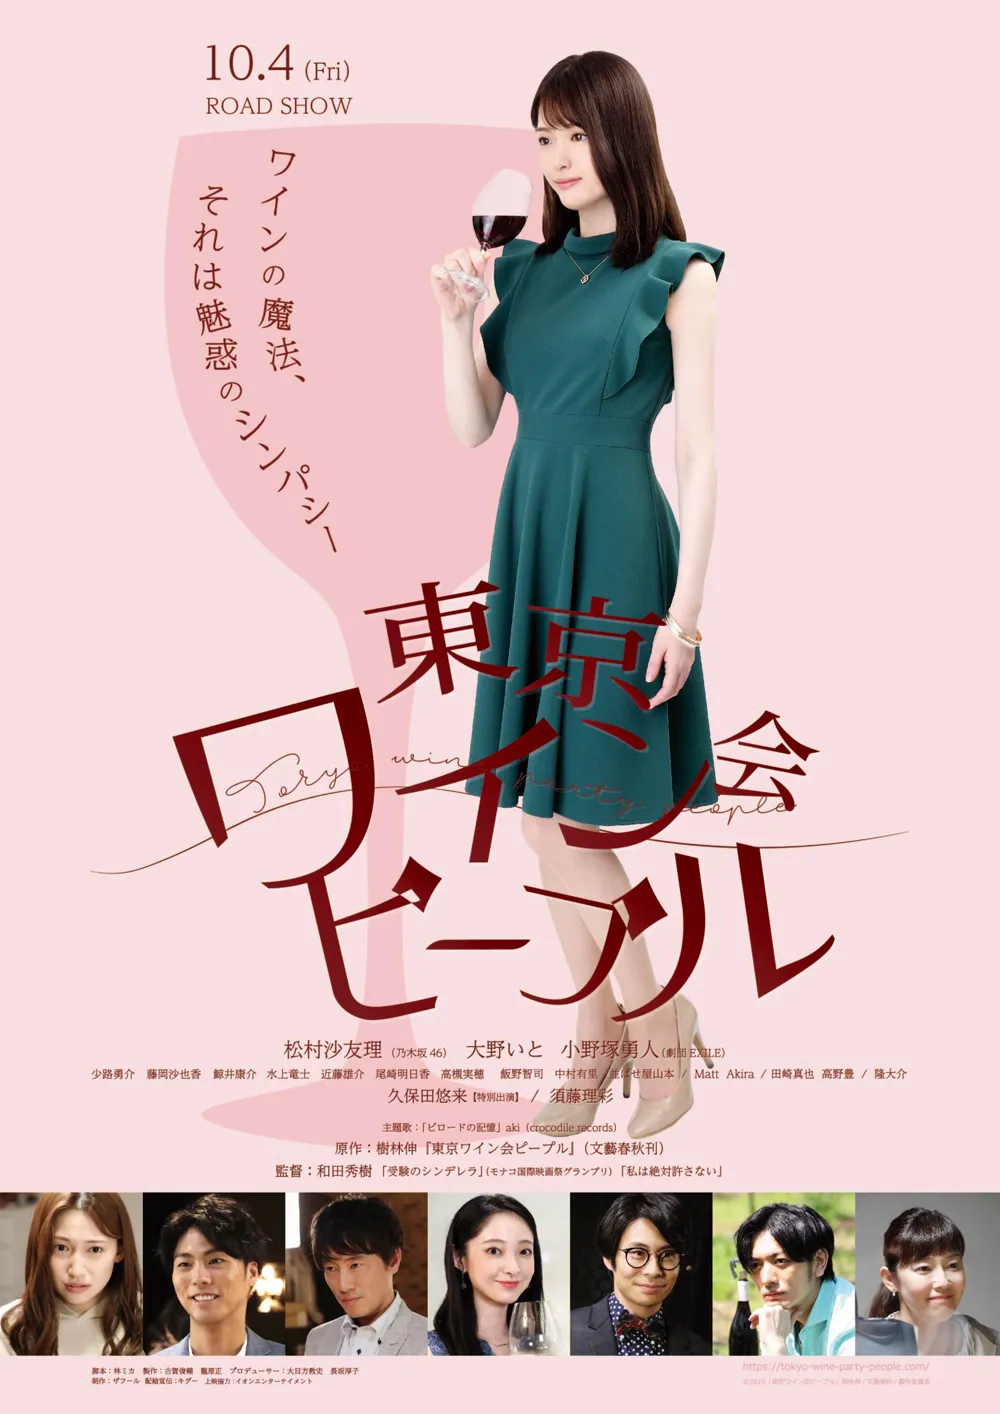 映画「東京ワイン会ピープル」は2019年秋に全国公開された